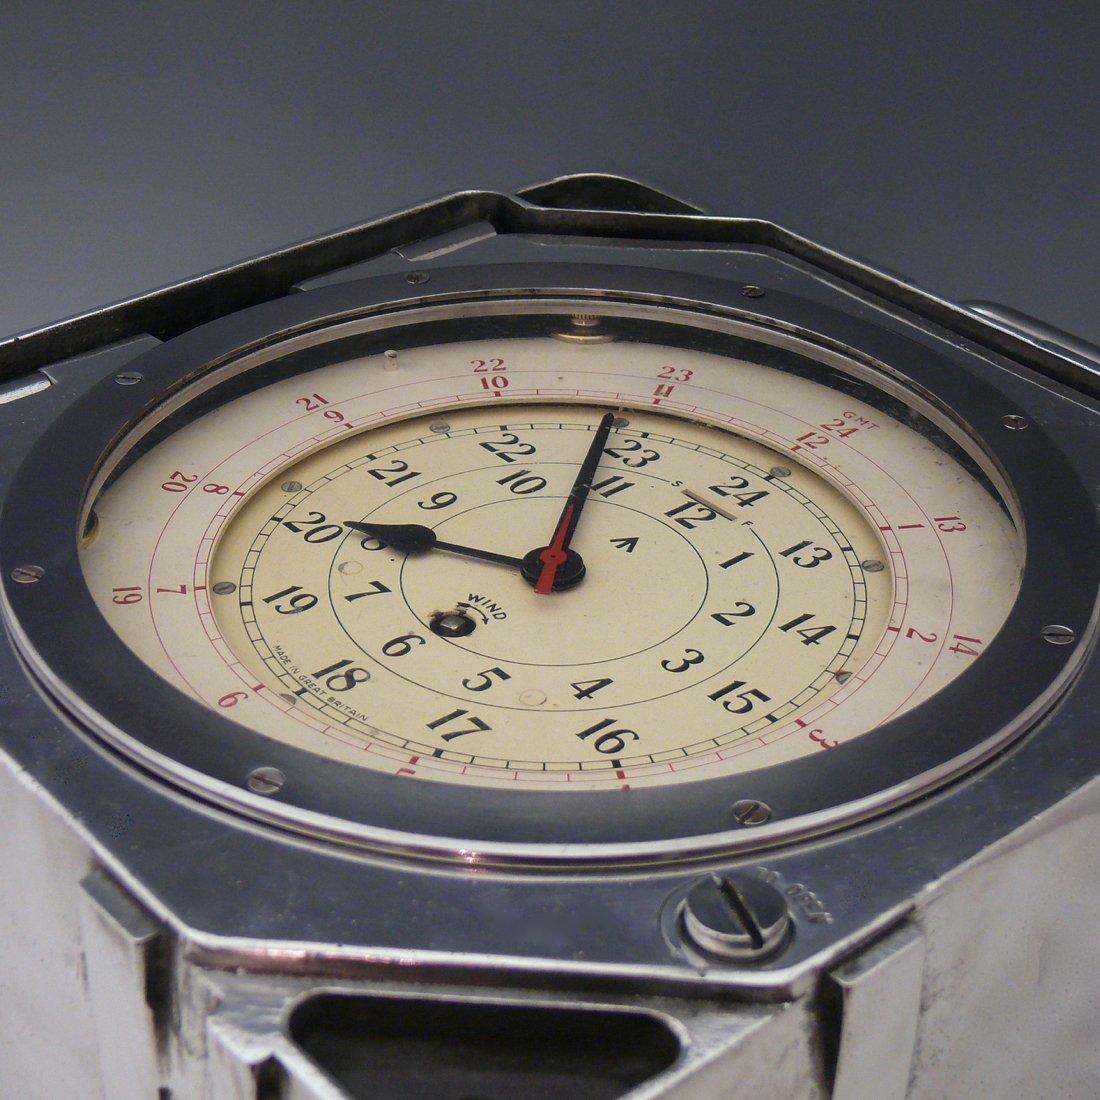 Aluminum British Army Signals Clock, circa 1955